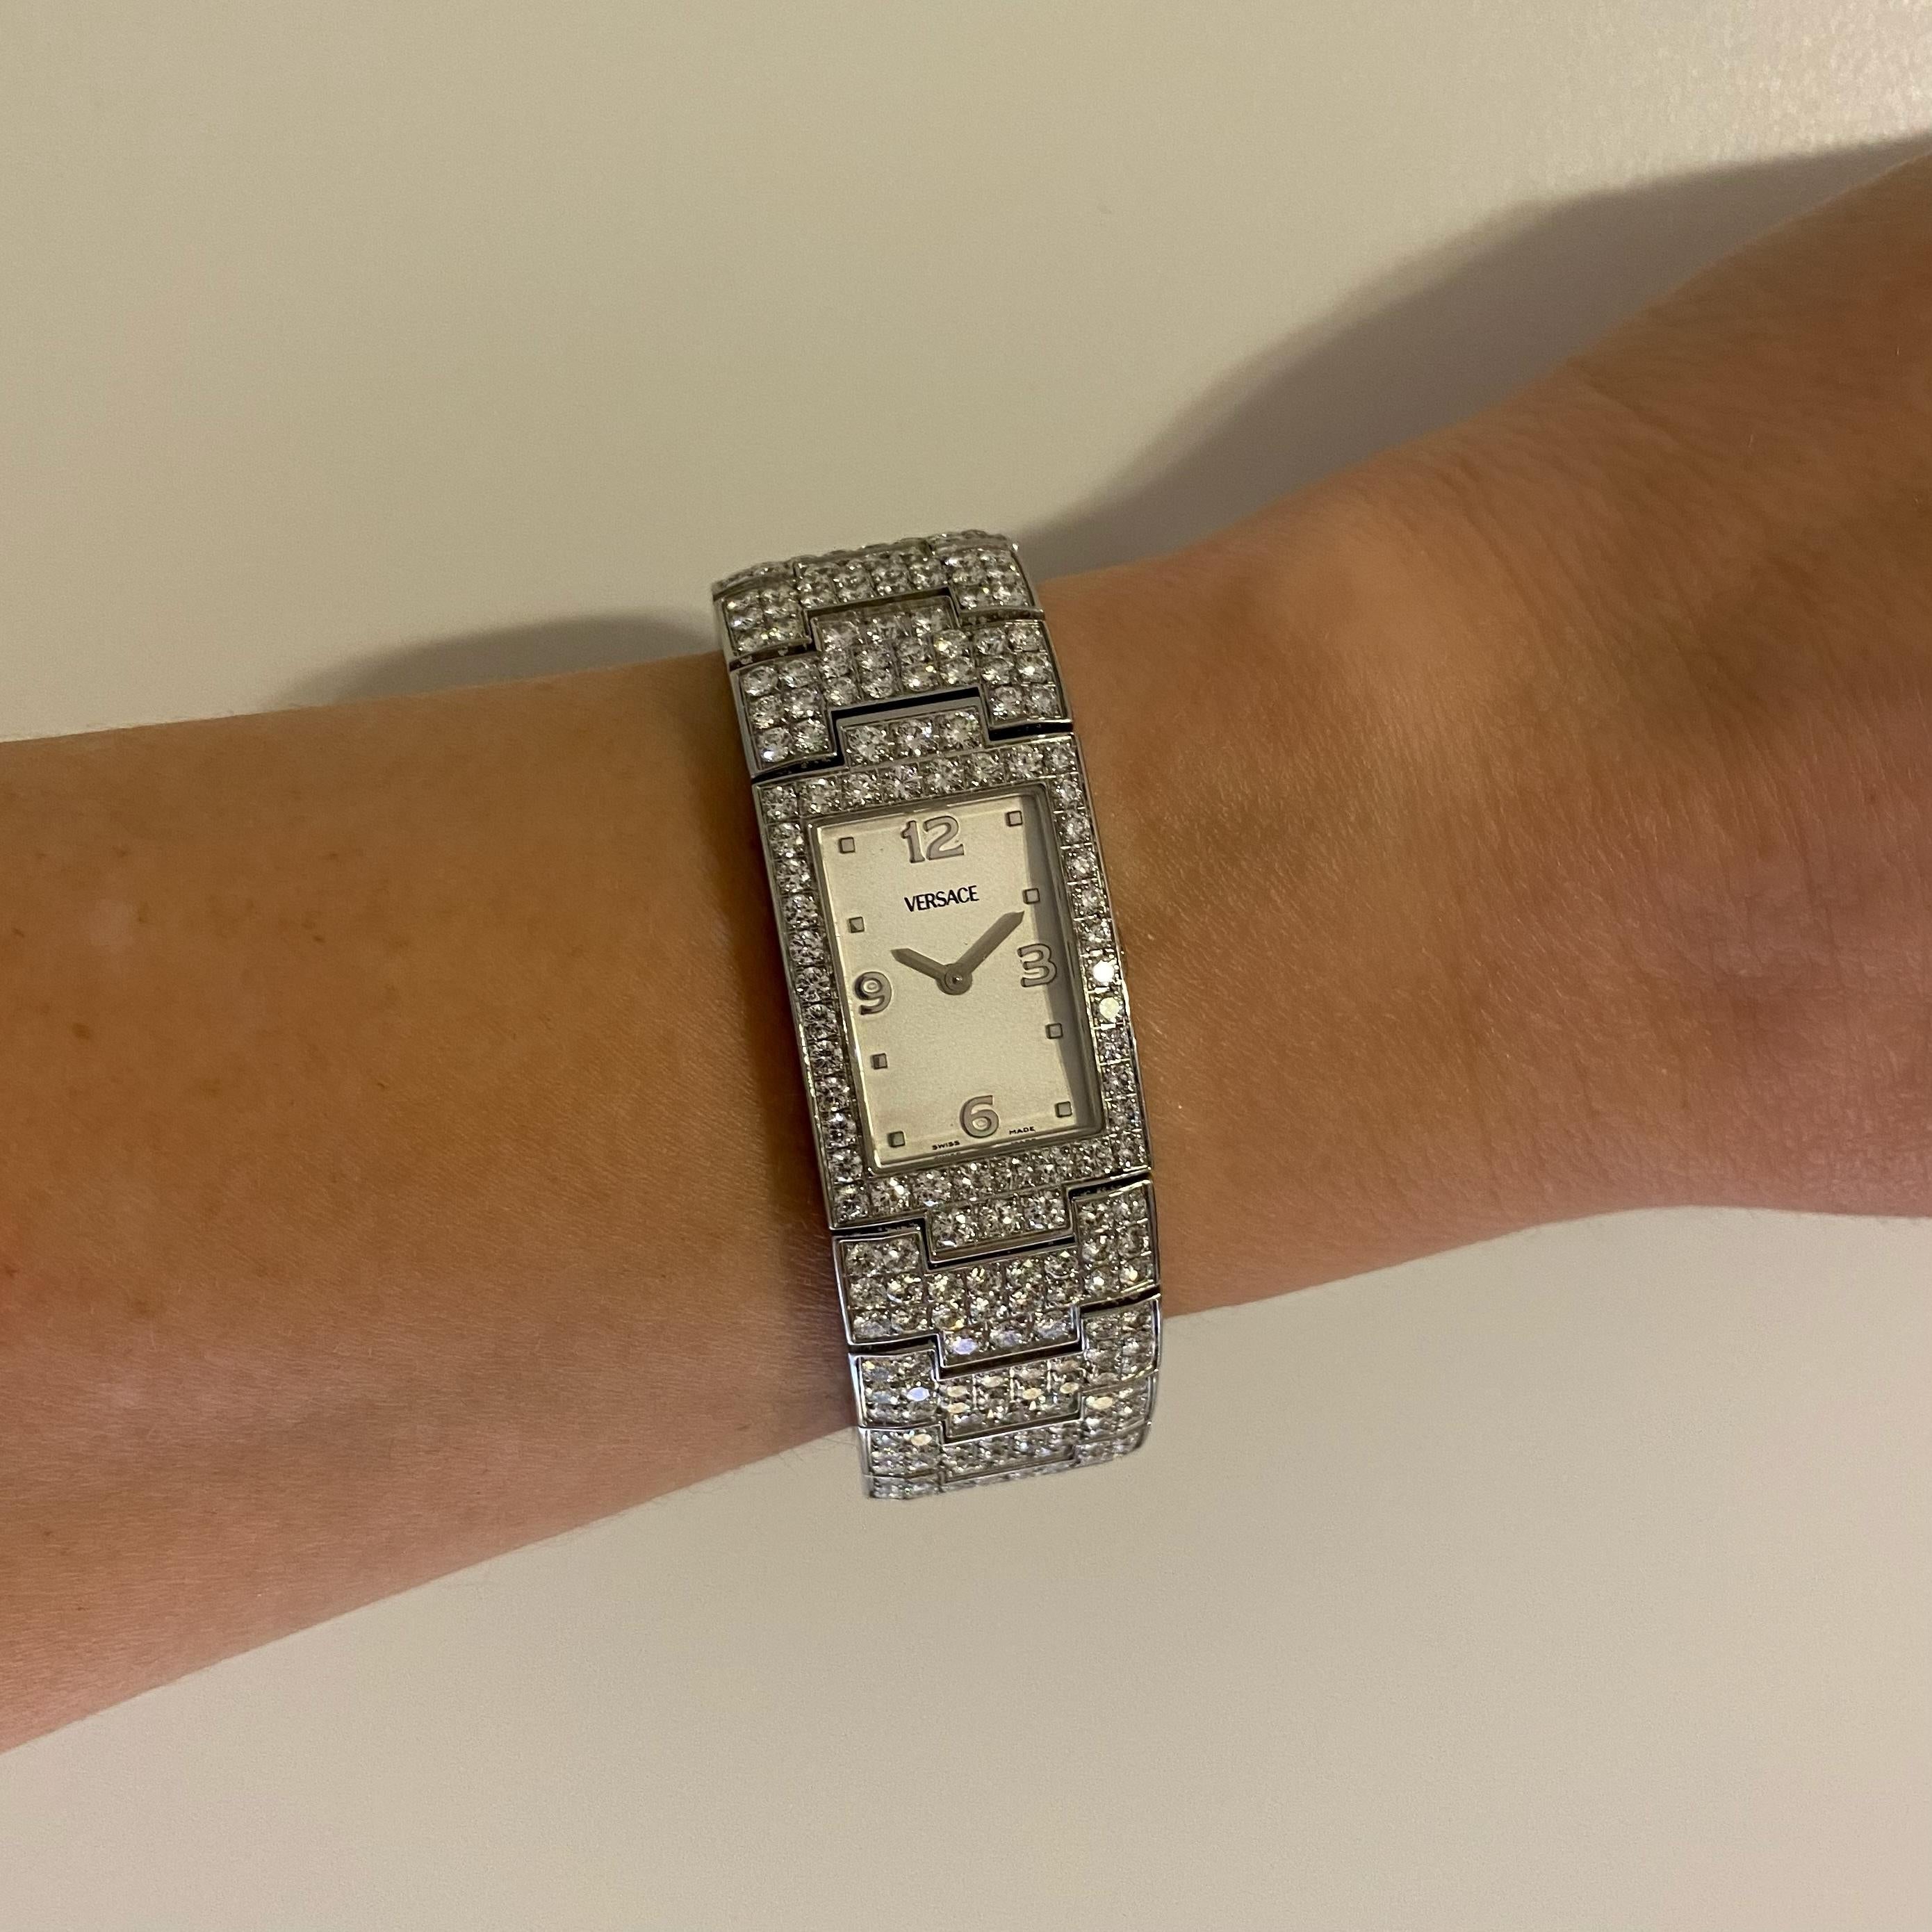 Rare montre Versace Greca 990139 en acier inoxydable avec diamants. Montre et bracelet sertis à la main de 446 diamants ronds taille brillant pesant environ 15,75 ctw. Fabrication suisse, mouvement à quartz. 30 mm de haut x 20 mm de large. 